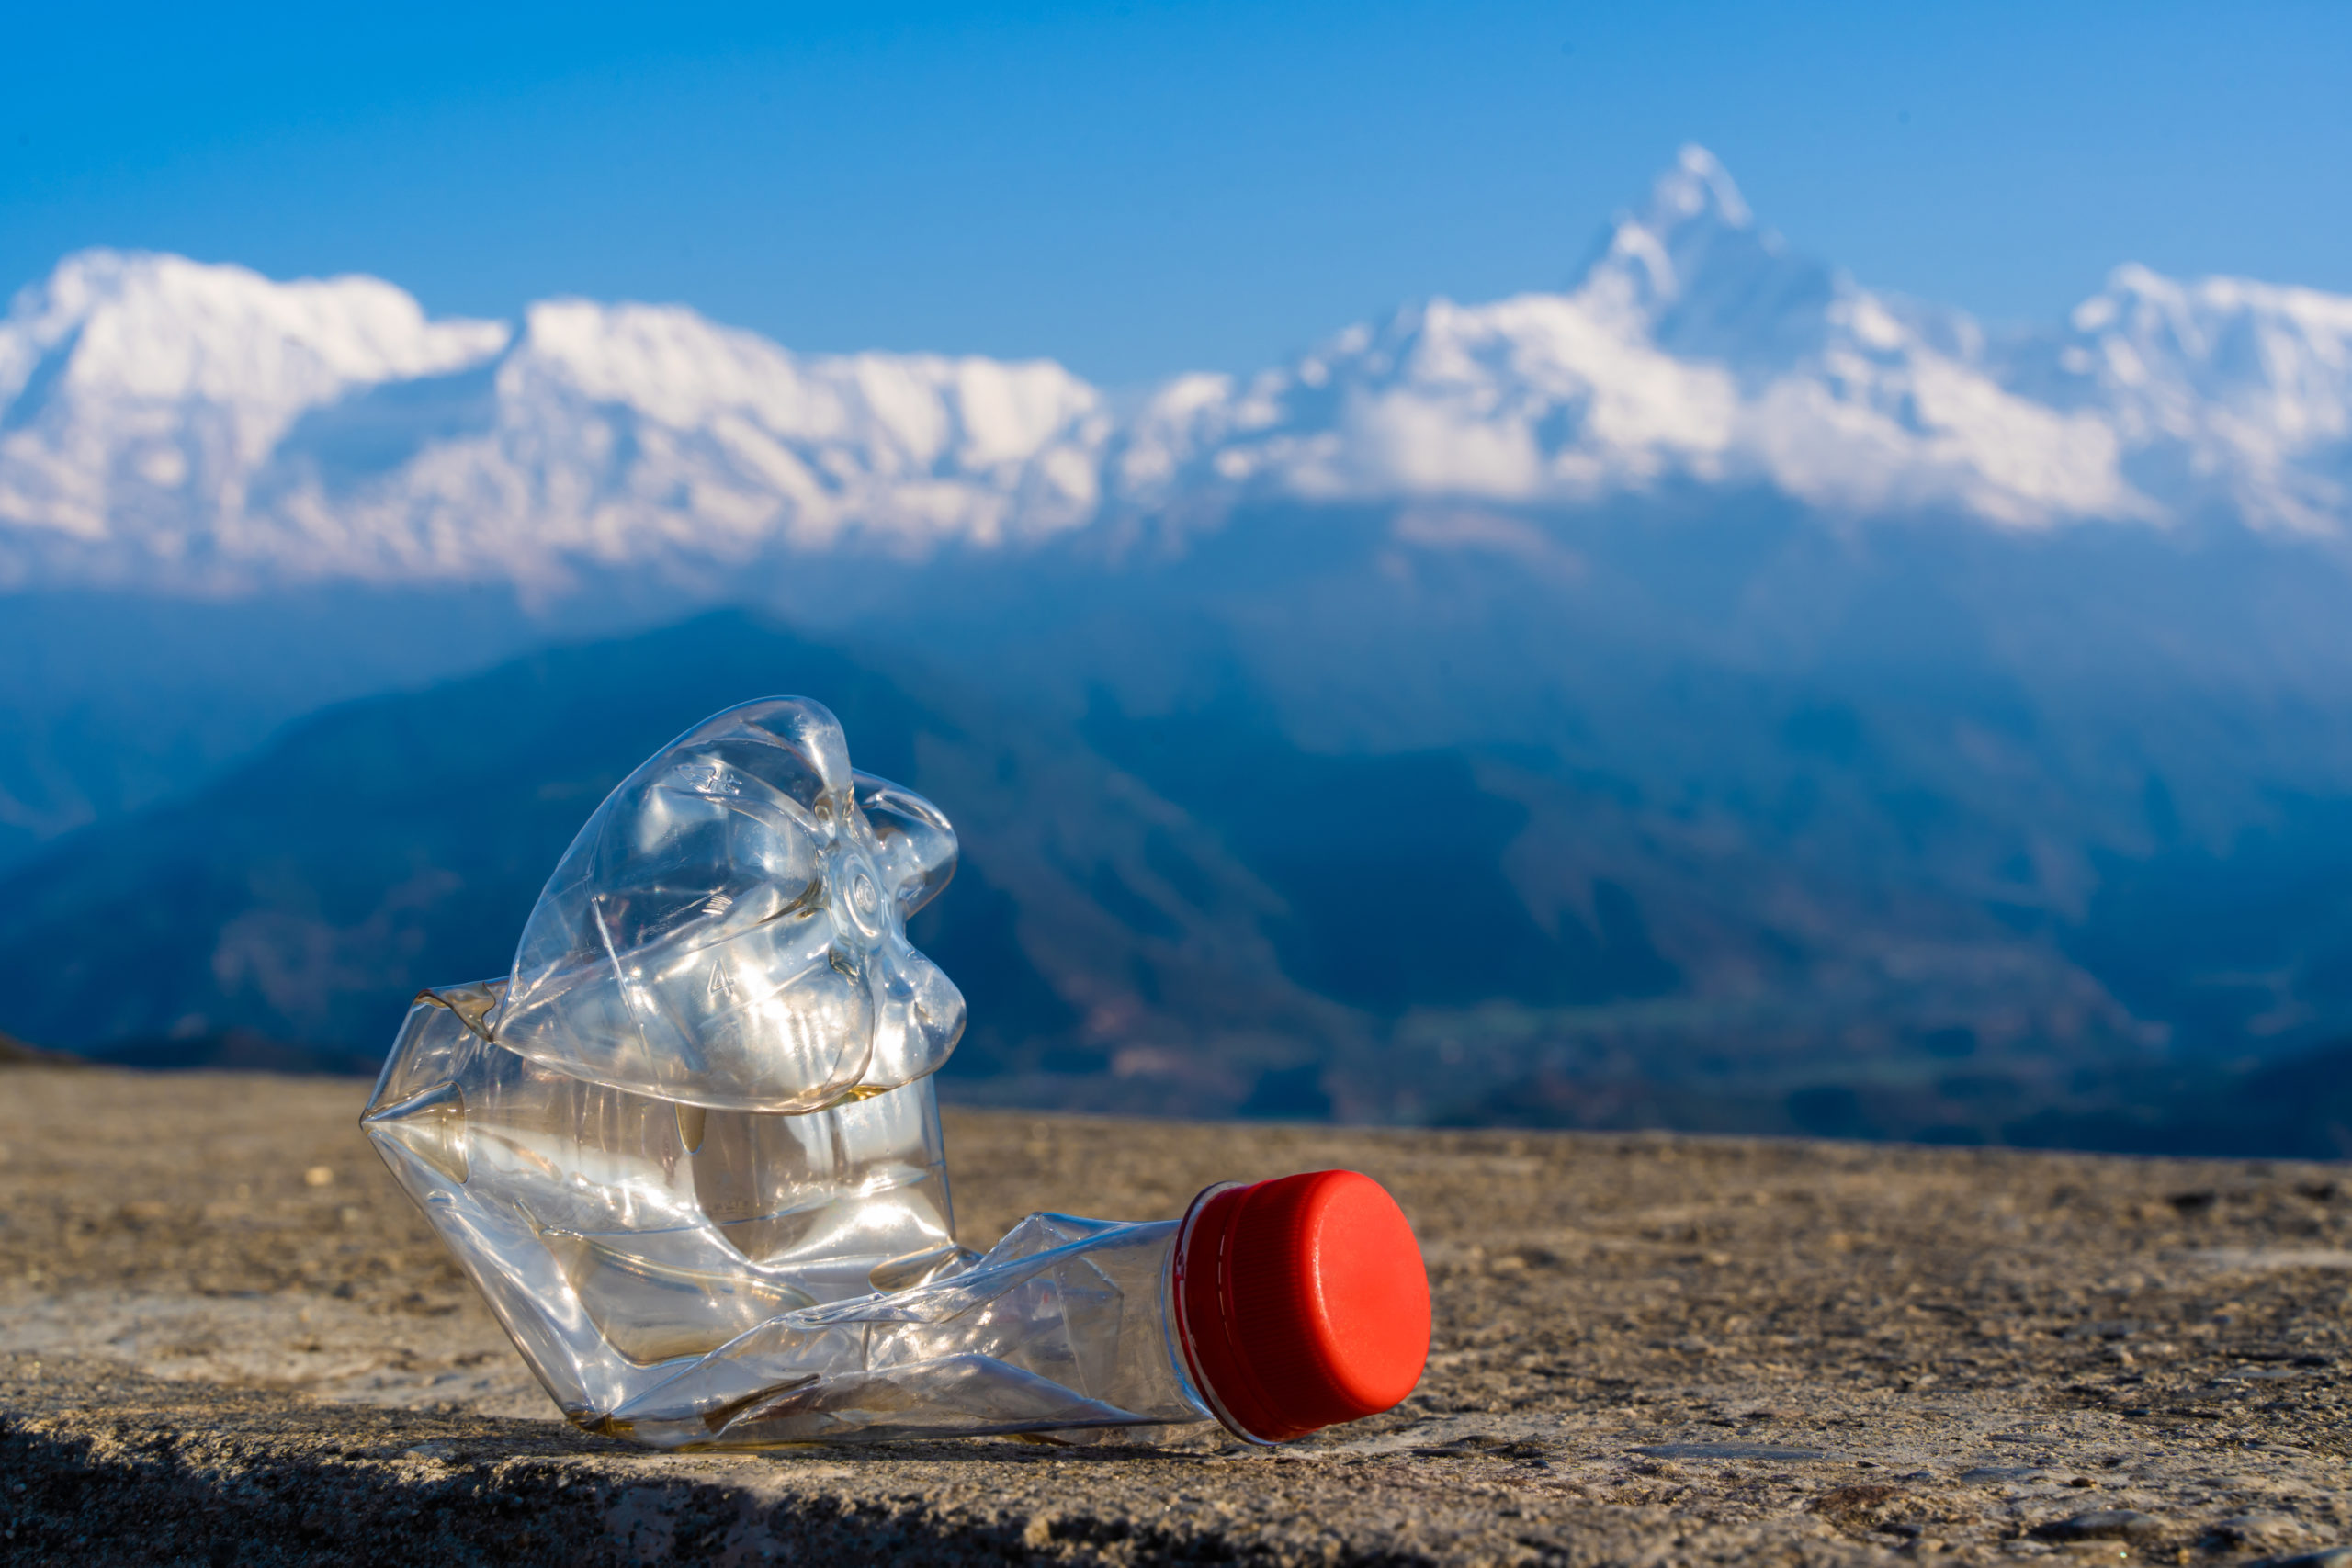 Deposito cauzionale, bottiglia di plastica abbandonata nell'ambiente in montagna